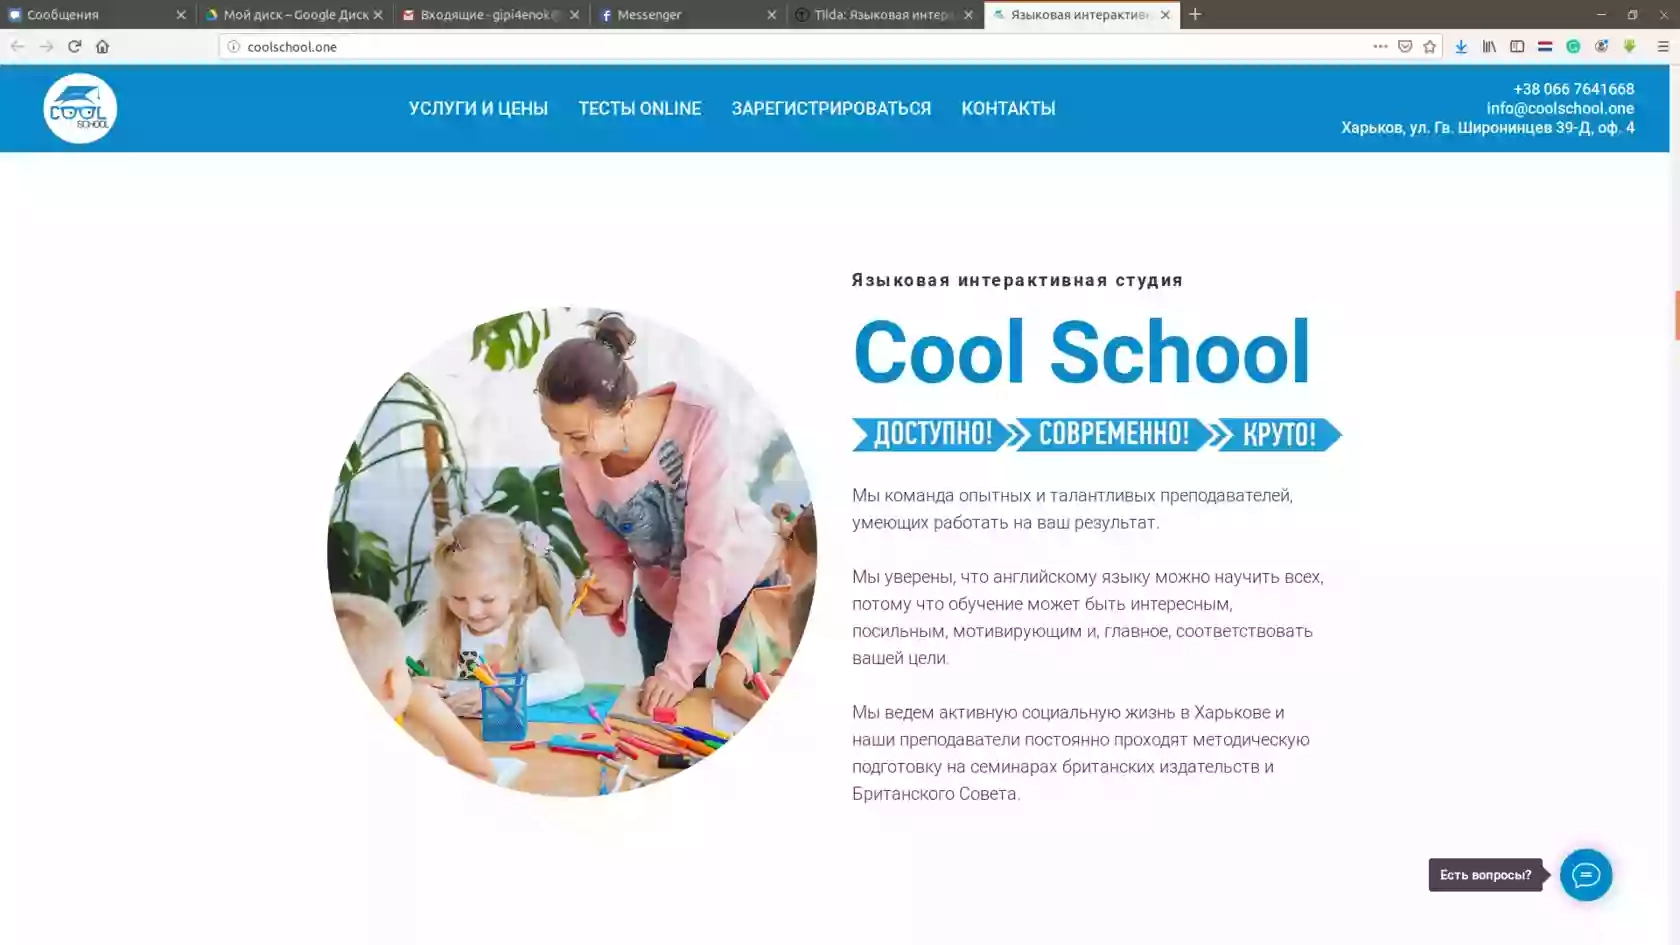 Cool School (курси англійської мови)